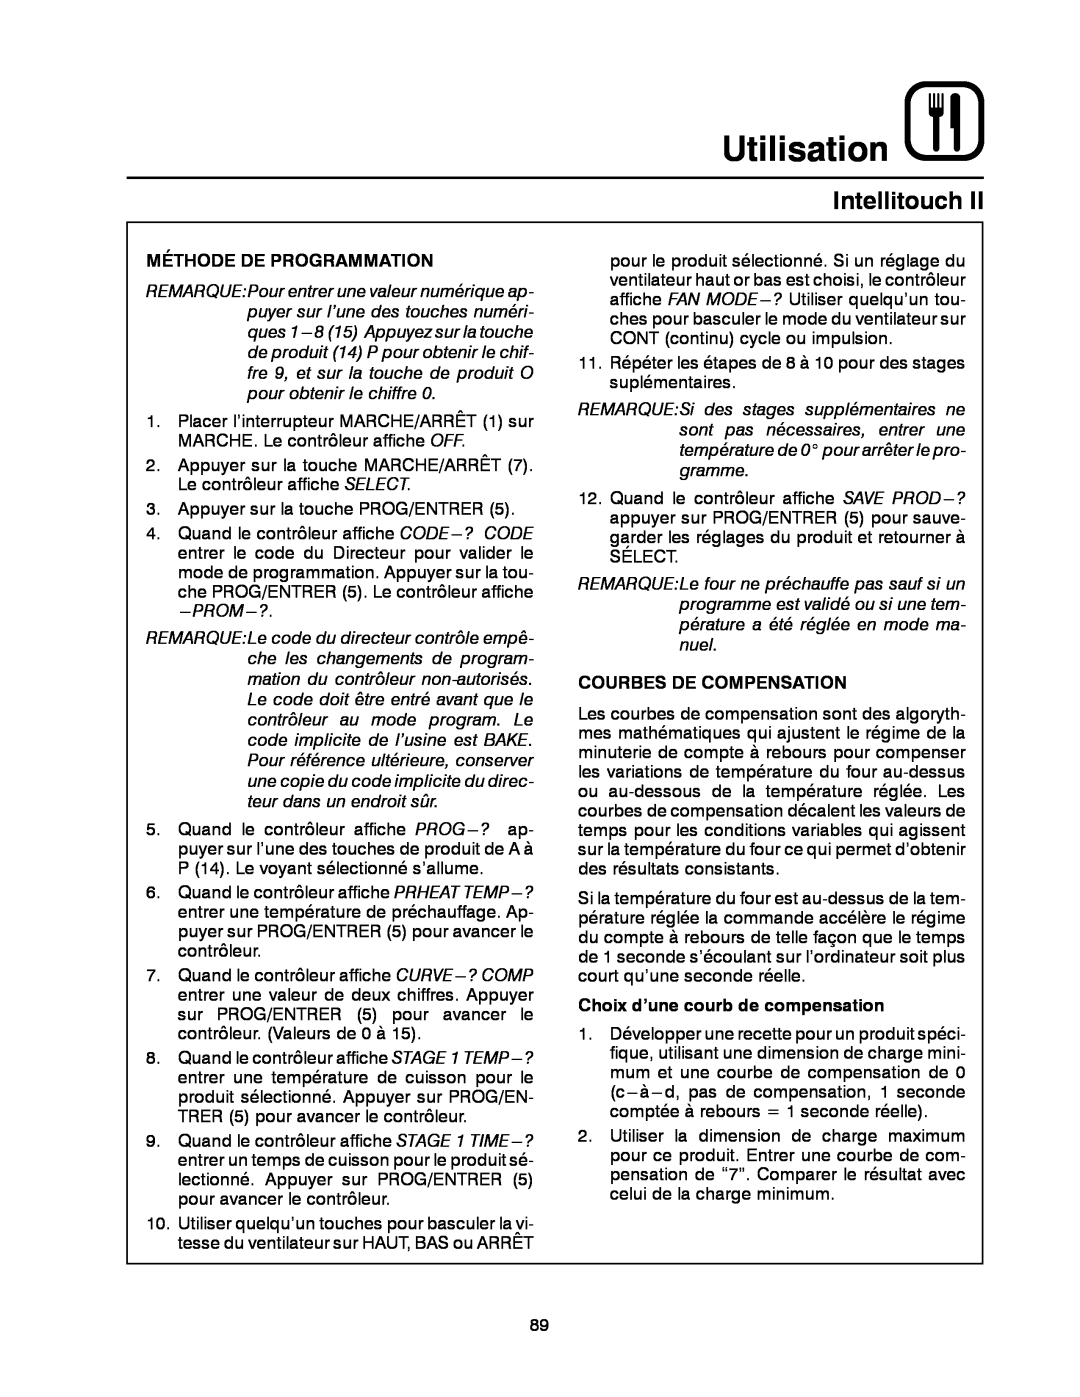 Blodgett DFG-100, DFG-200 manual Utilisation, Intellitouch, Méthode De Programmation, Courbes De Compensation 